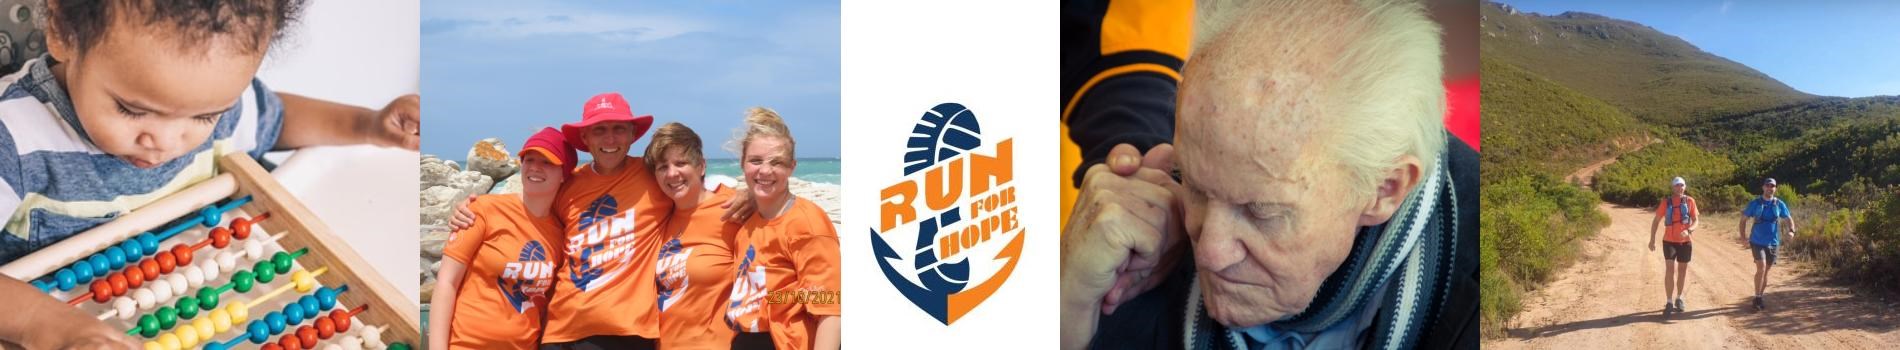 Run for Hope Pilgrimage 8 marathons in 8 days